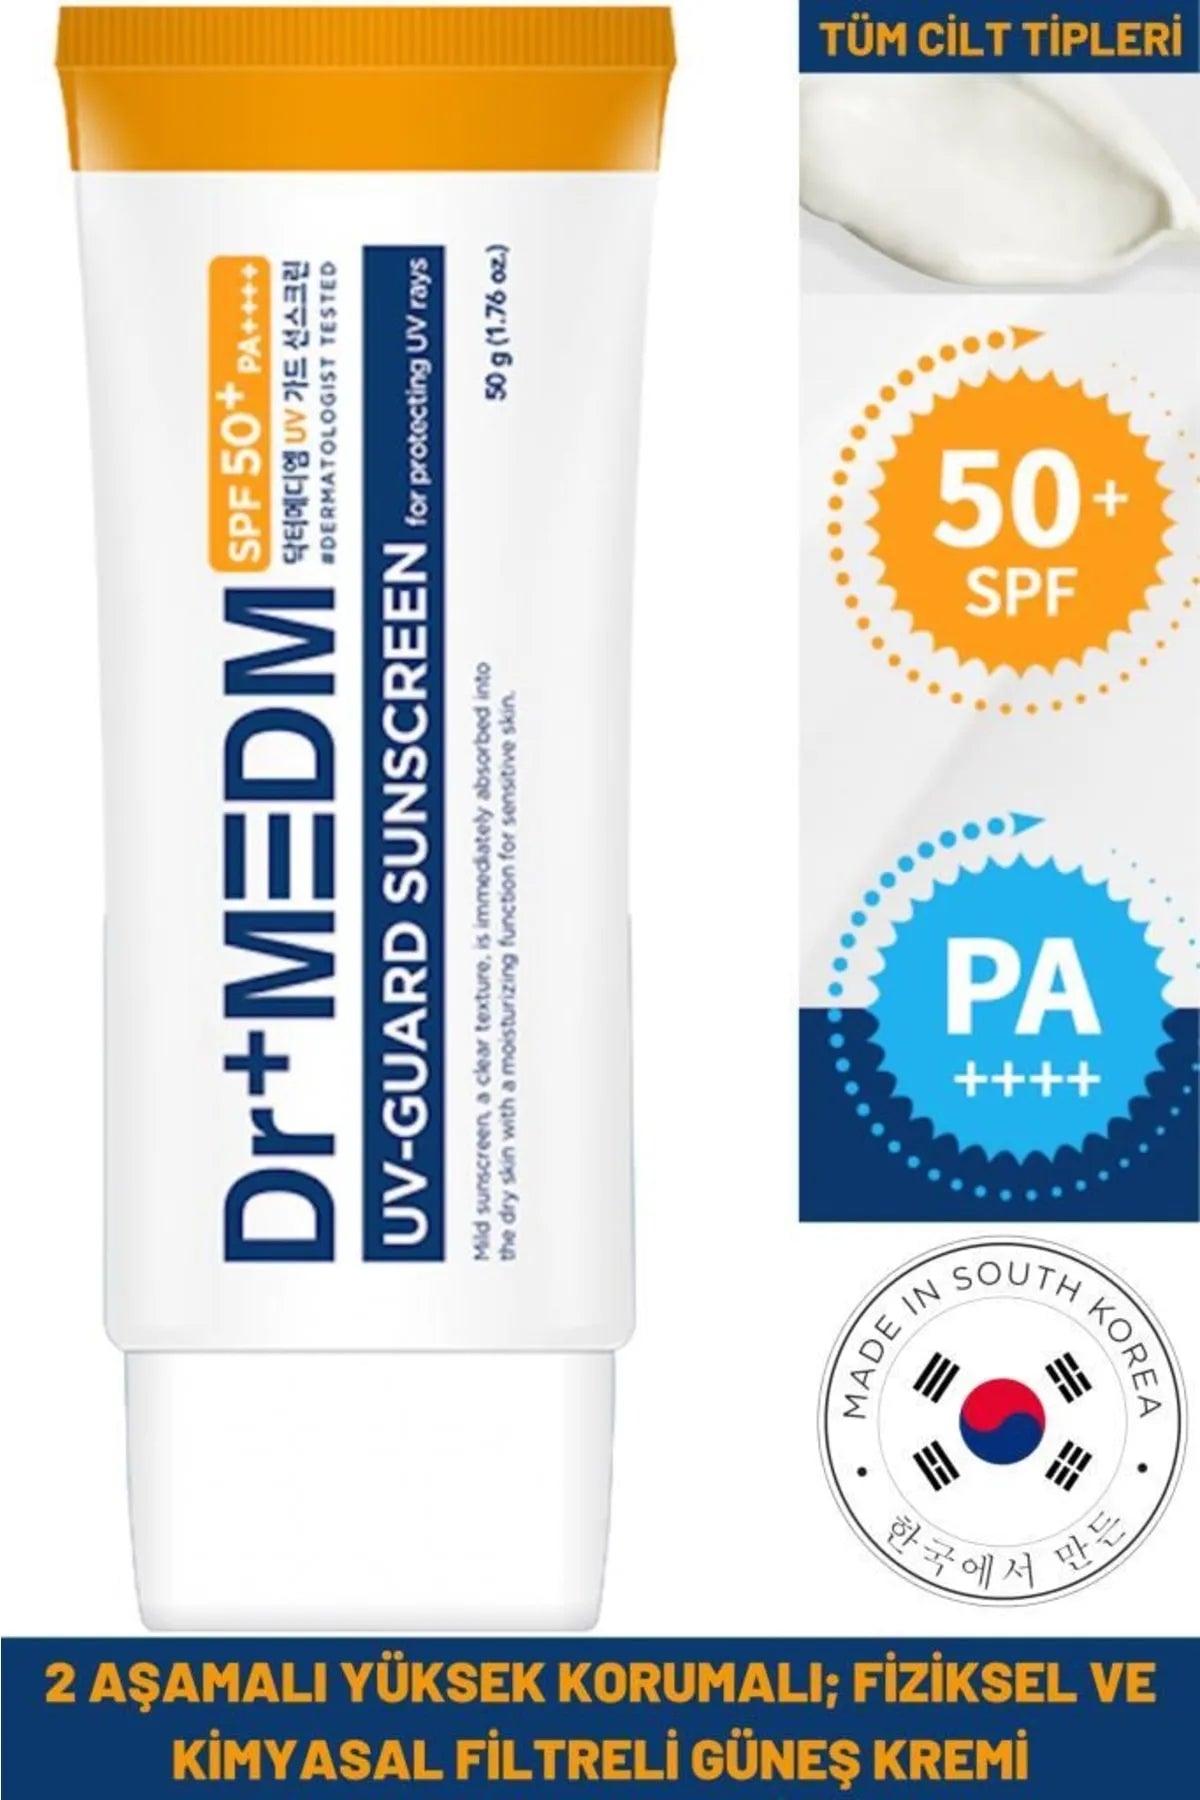 Dermal Dr+Medm Uv Guard Sunscreen Yüksek Korumalı Fiziksel ve Kimyasal Filtreli Güneş Kremi 50 g